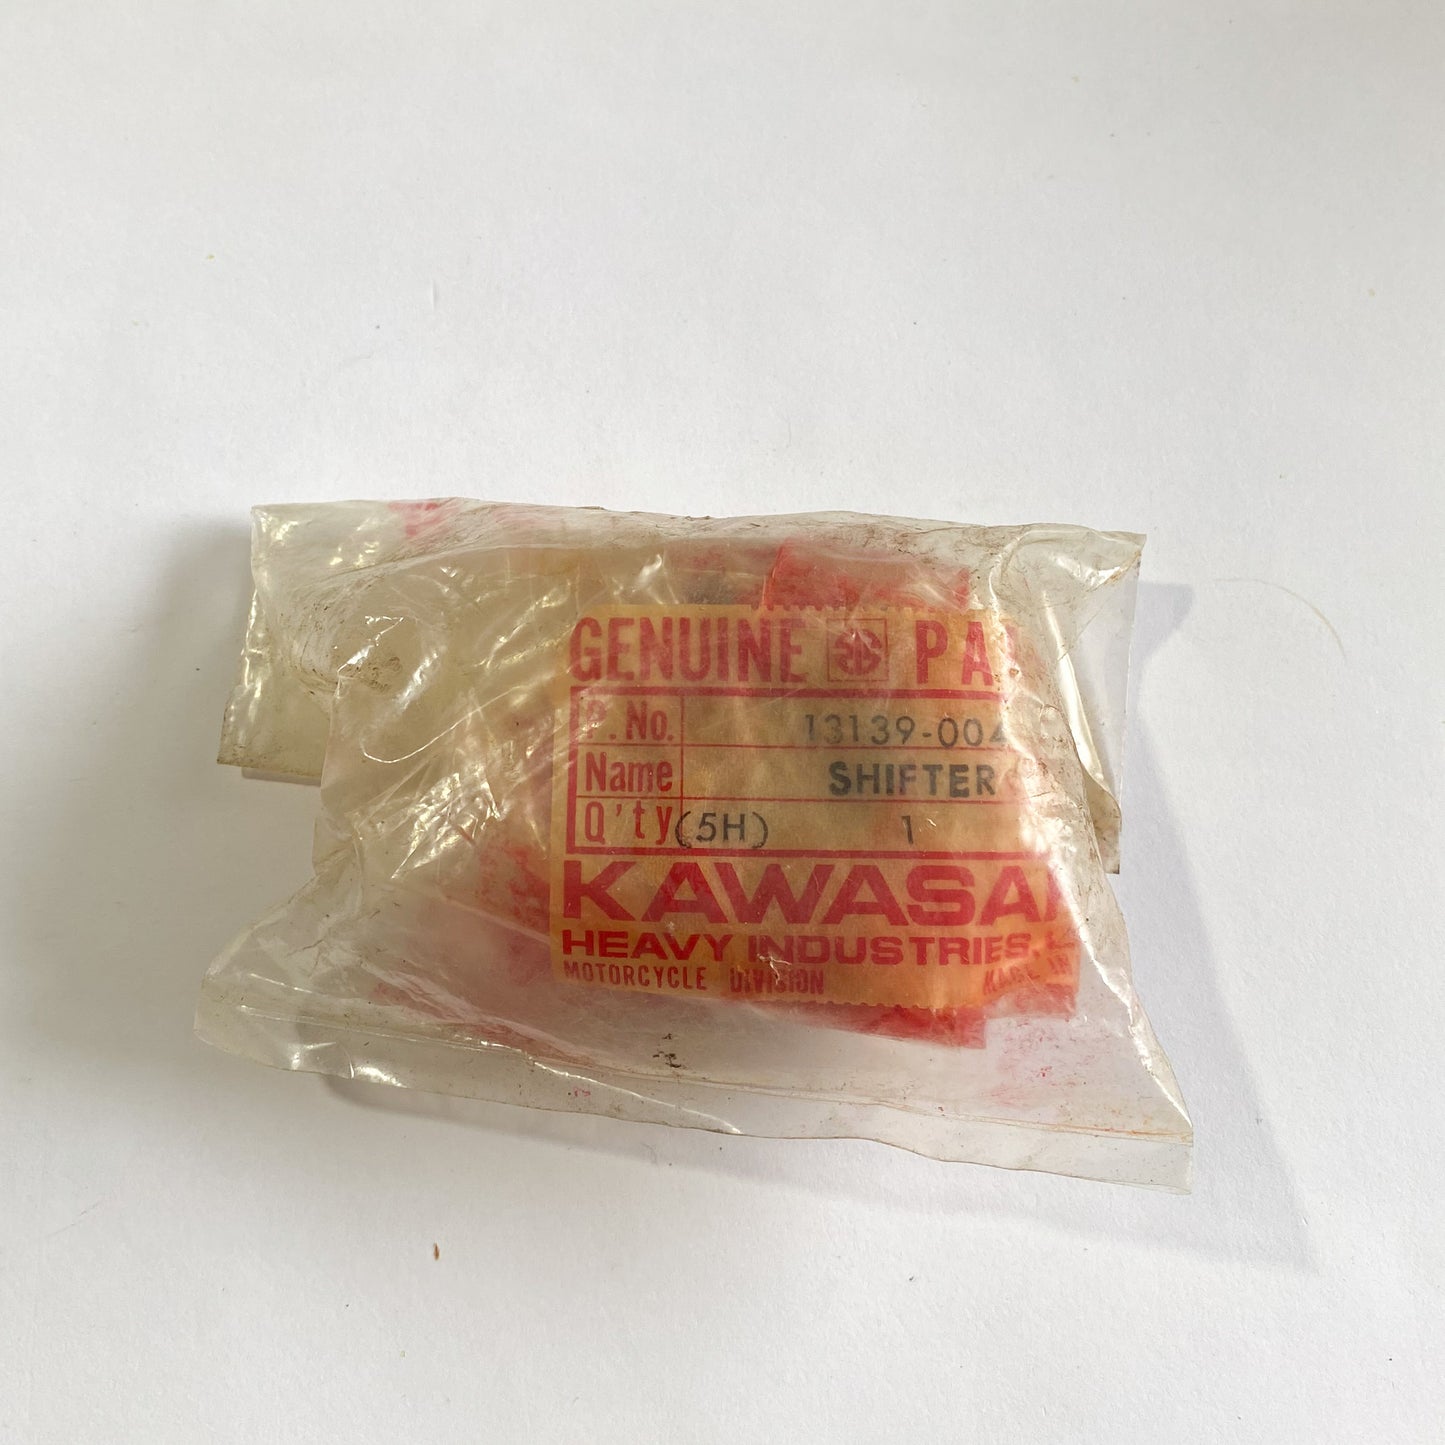 KAWASAKI SHIFTER 13139-004